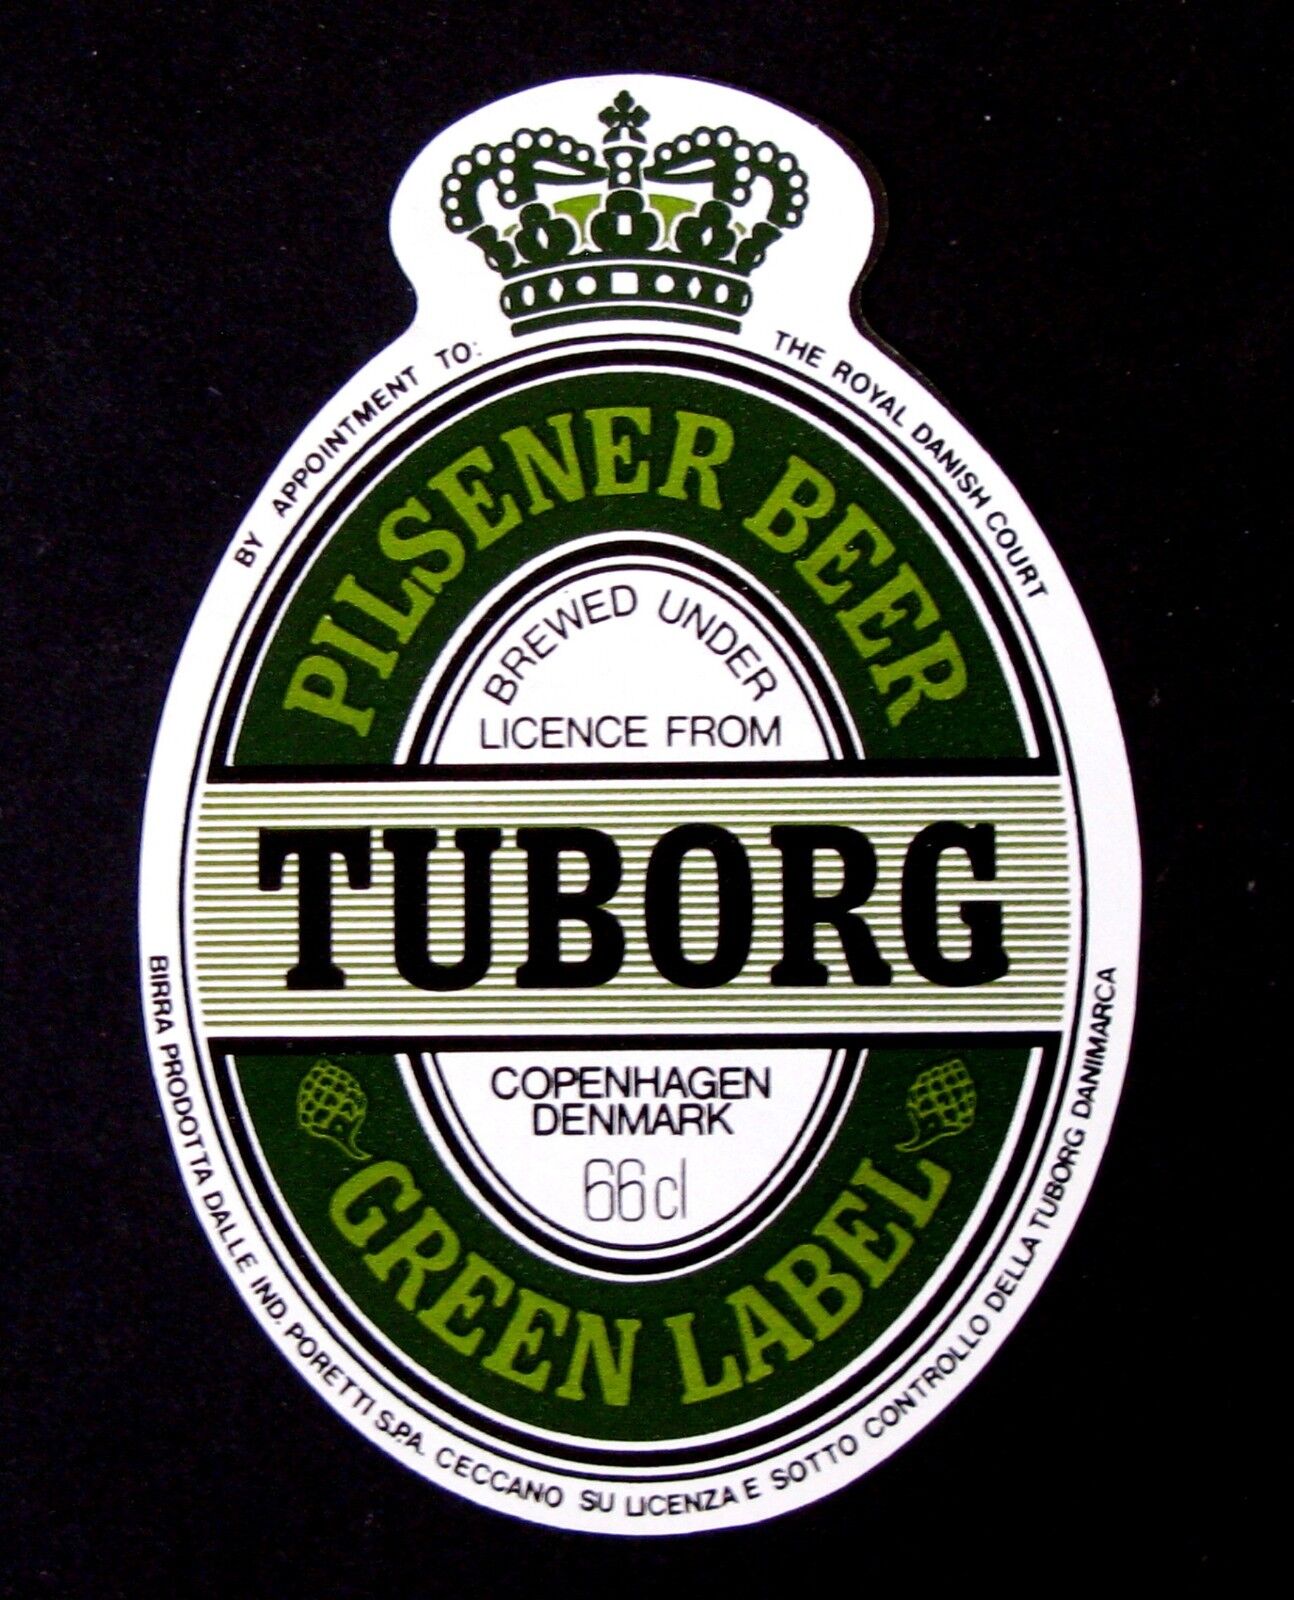 Tuborg Breweries PILSENER BER - GREEN LABEL label DENMARK 66cl Var. #7